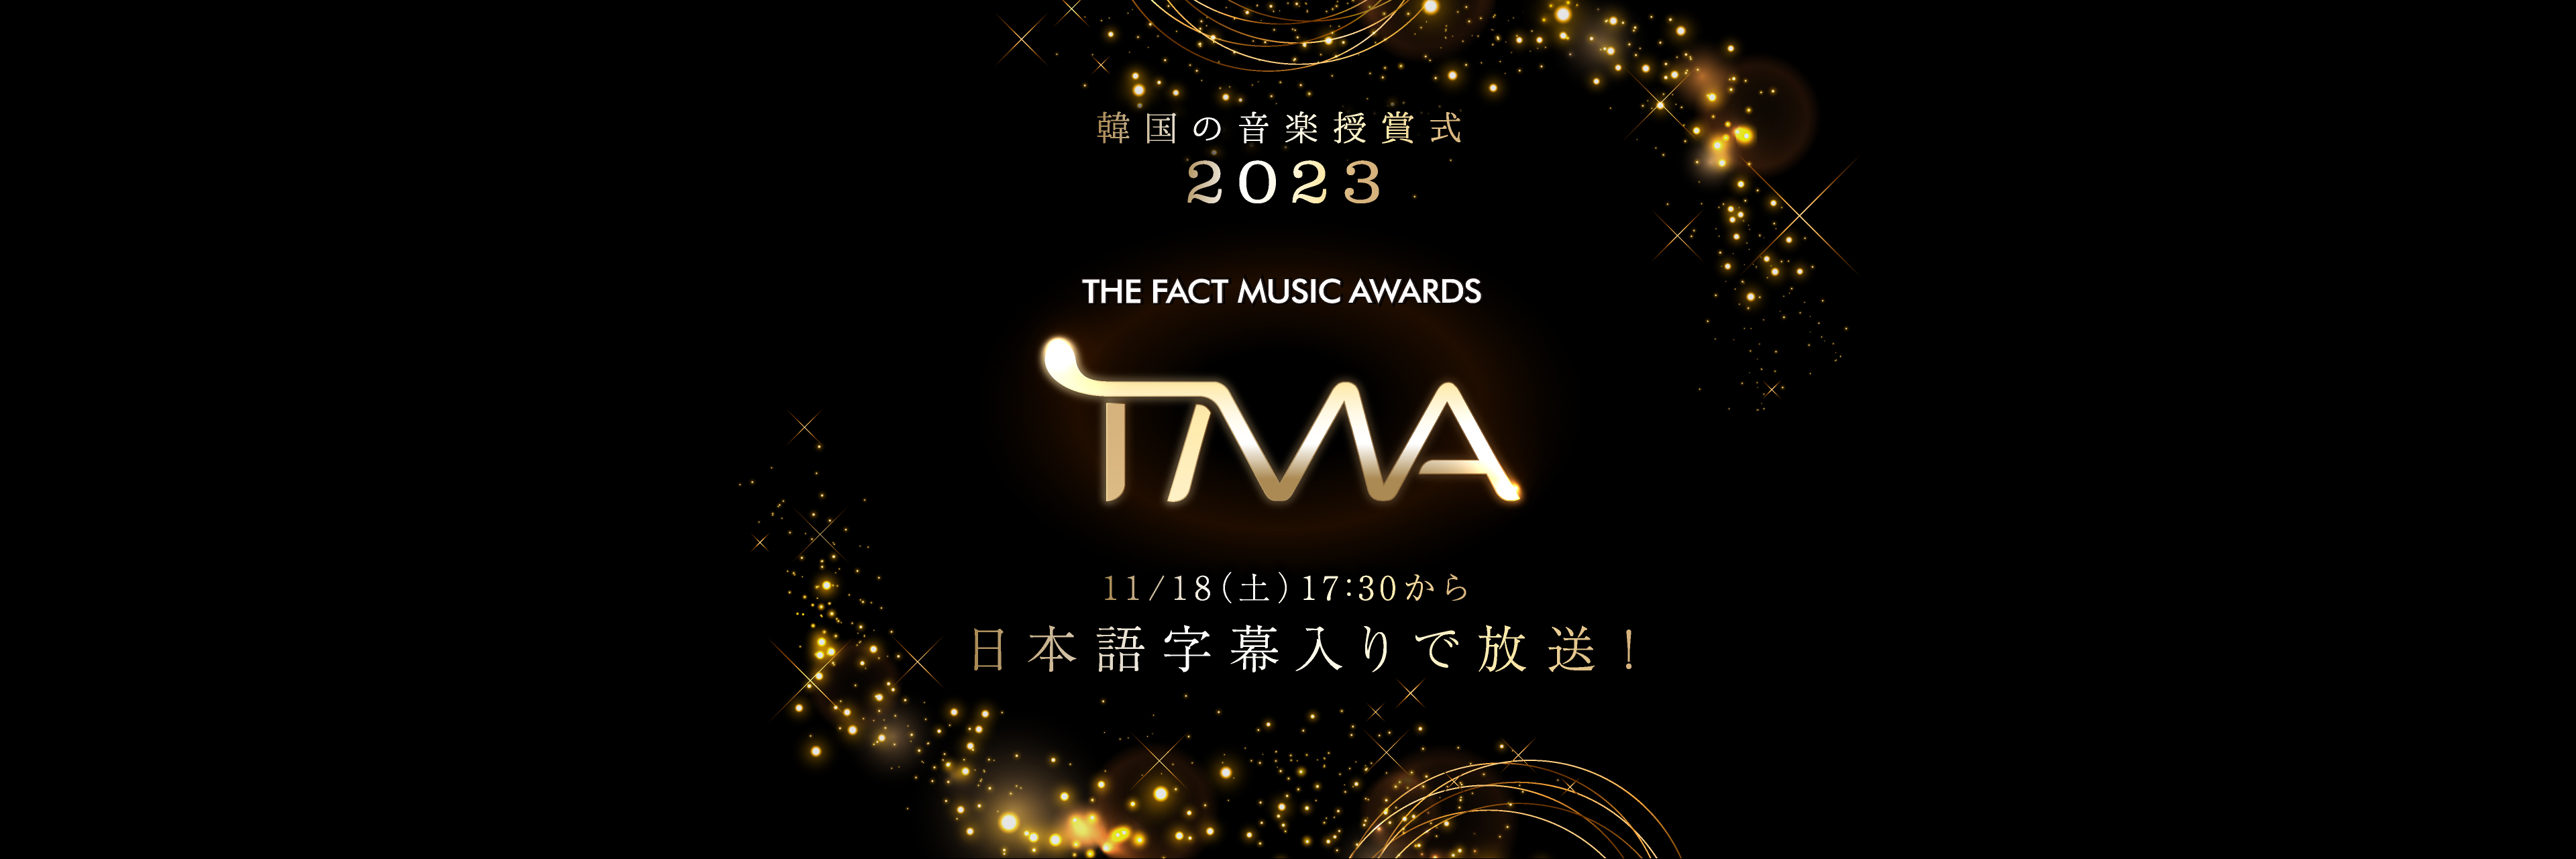 韓国の音楽授賞式 2023 THE FACT MUSIC AWARDS (TMA) 11/18( 土)17:30 から日本語字幕入りで放送！